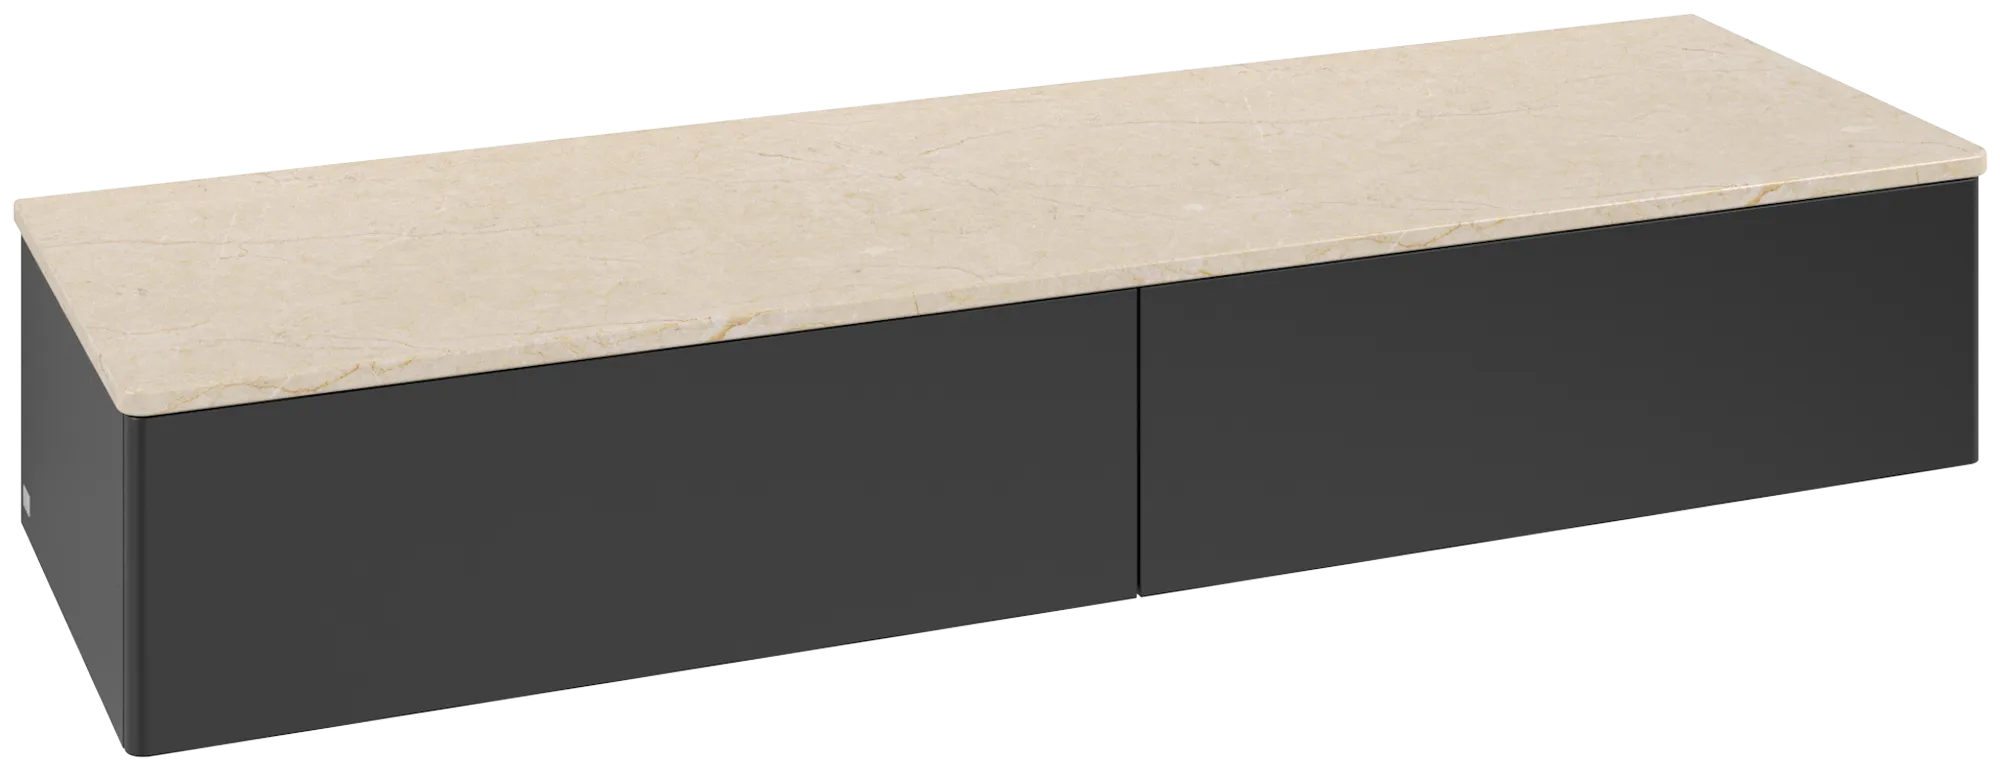 Bild von VILLEROY BOCH Antao Sideboard, 2 Auszüge, 1600 x 268 x 500 mm, Front ohne Struktur, Black Matt Lacquer / Botticino #K42003PD